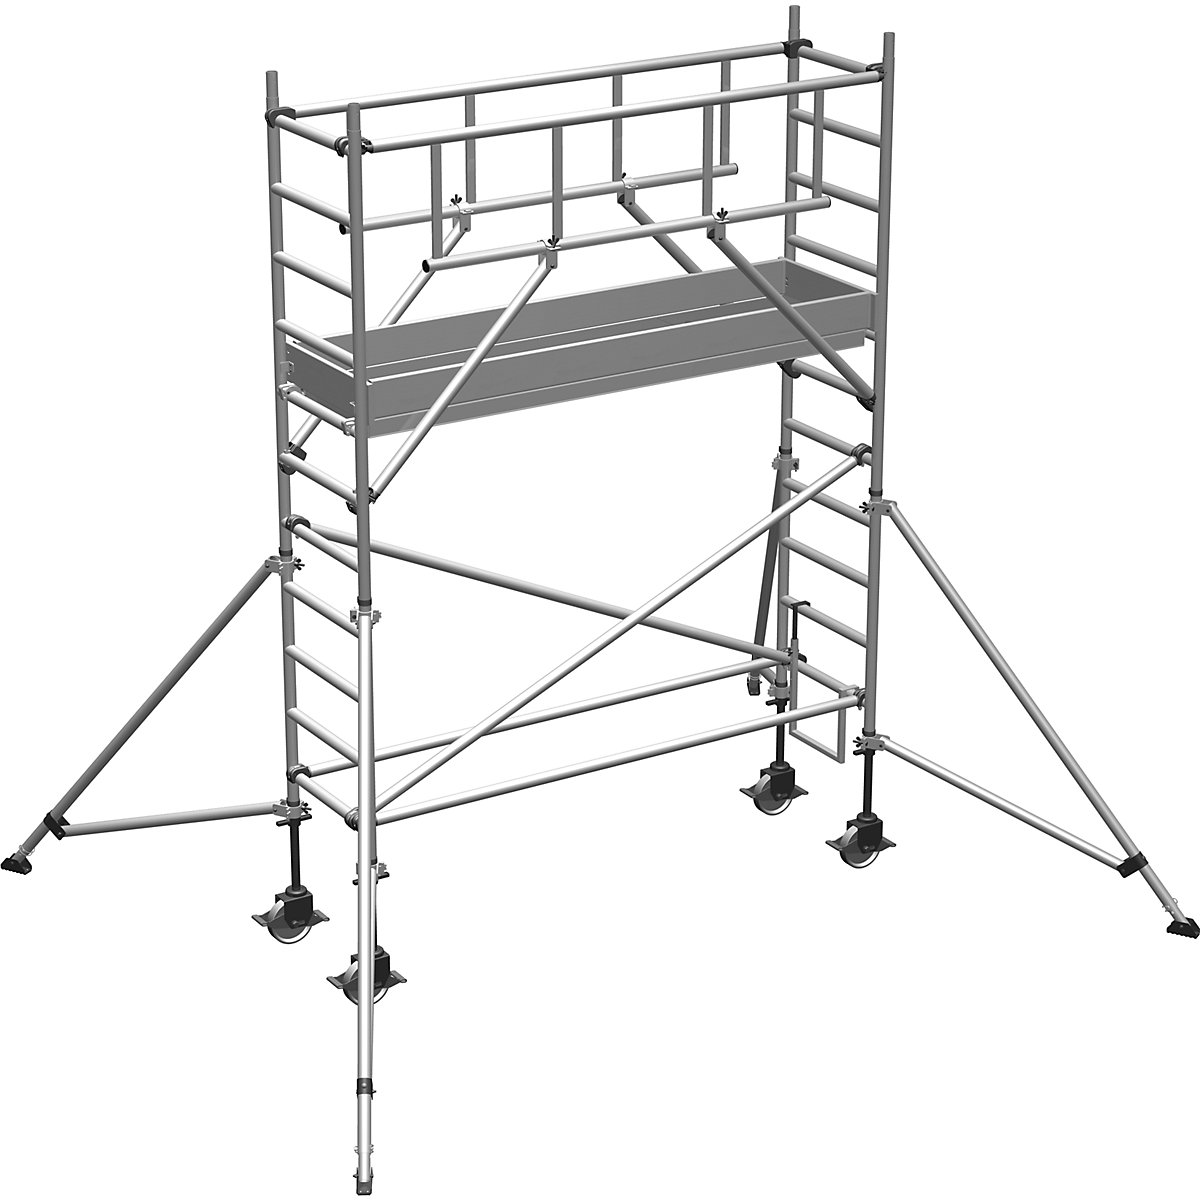 Pomični oder S-PLUS – ZARGES, ploščad 1,80 x 0,60 m, delovna višina 4,50 m